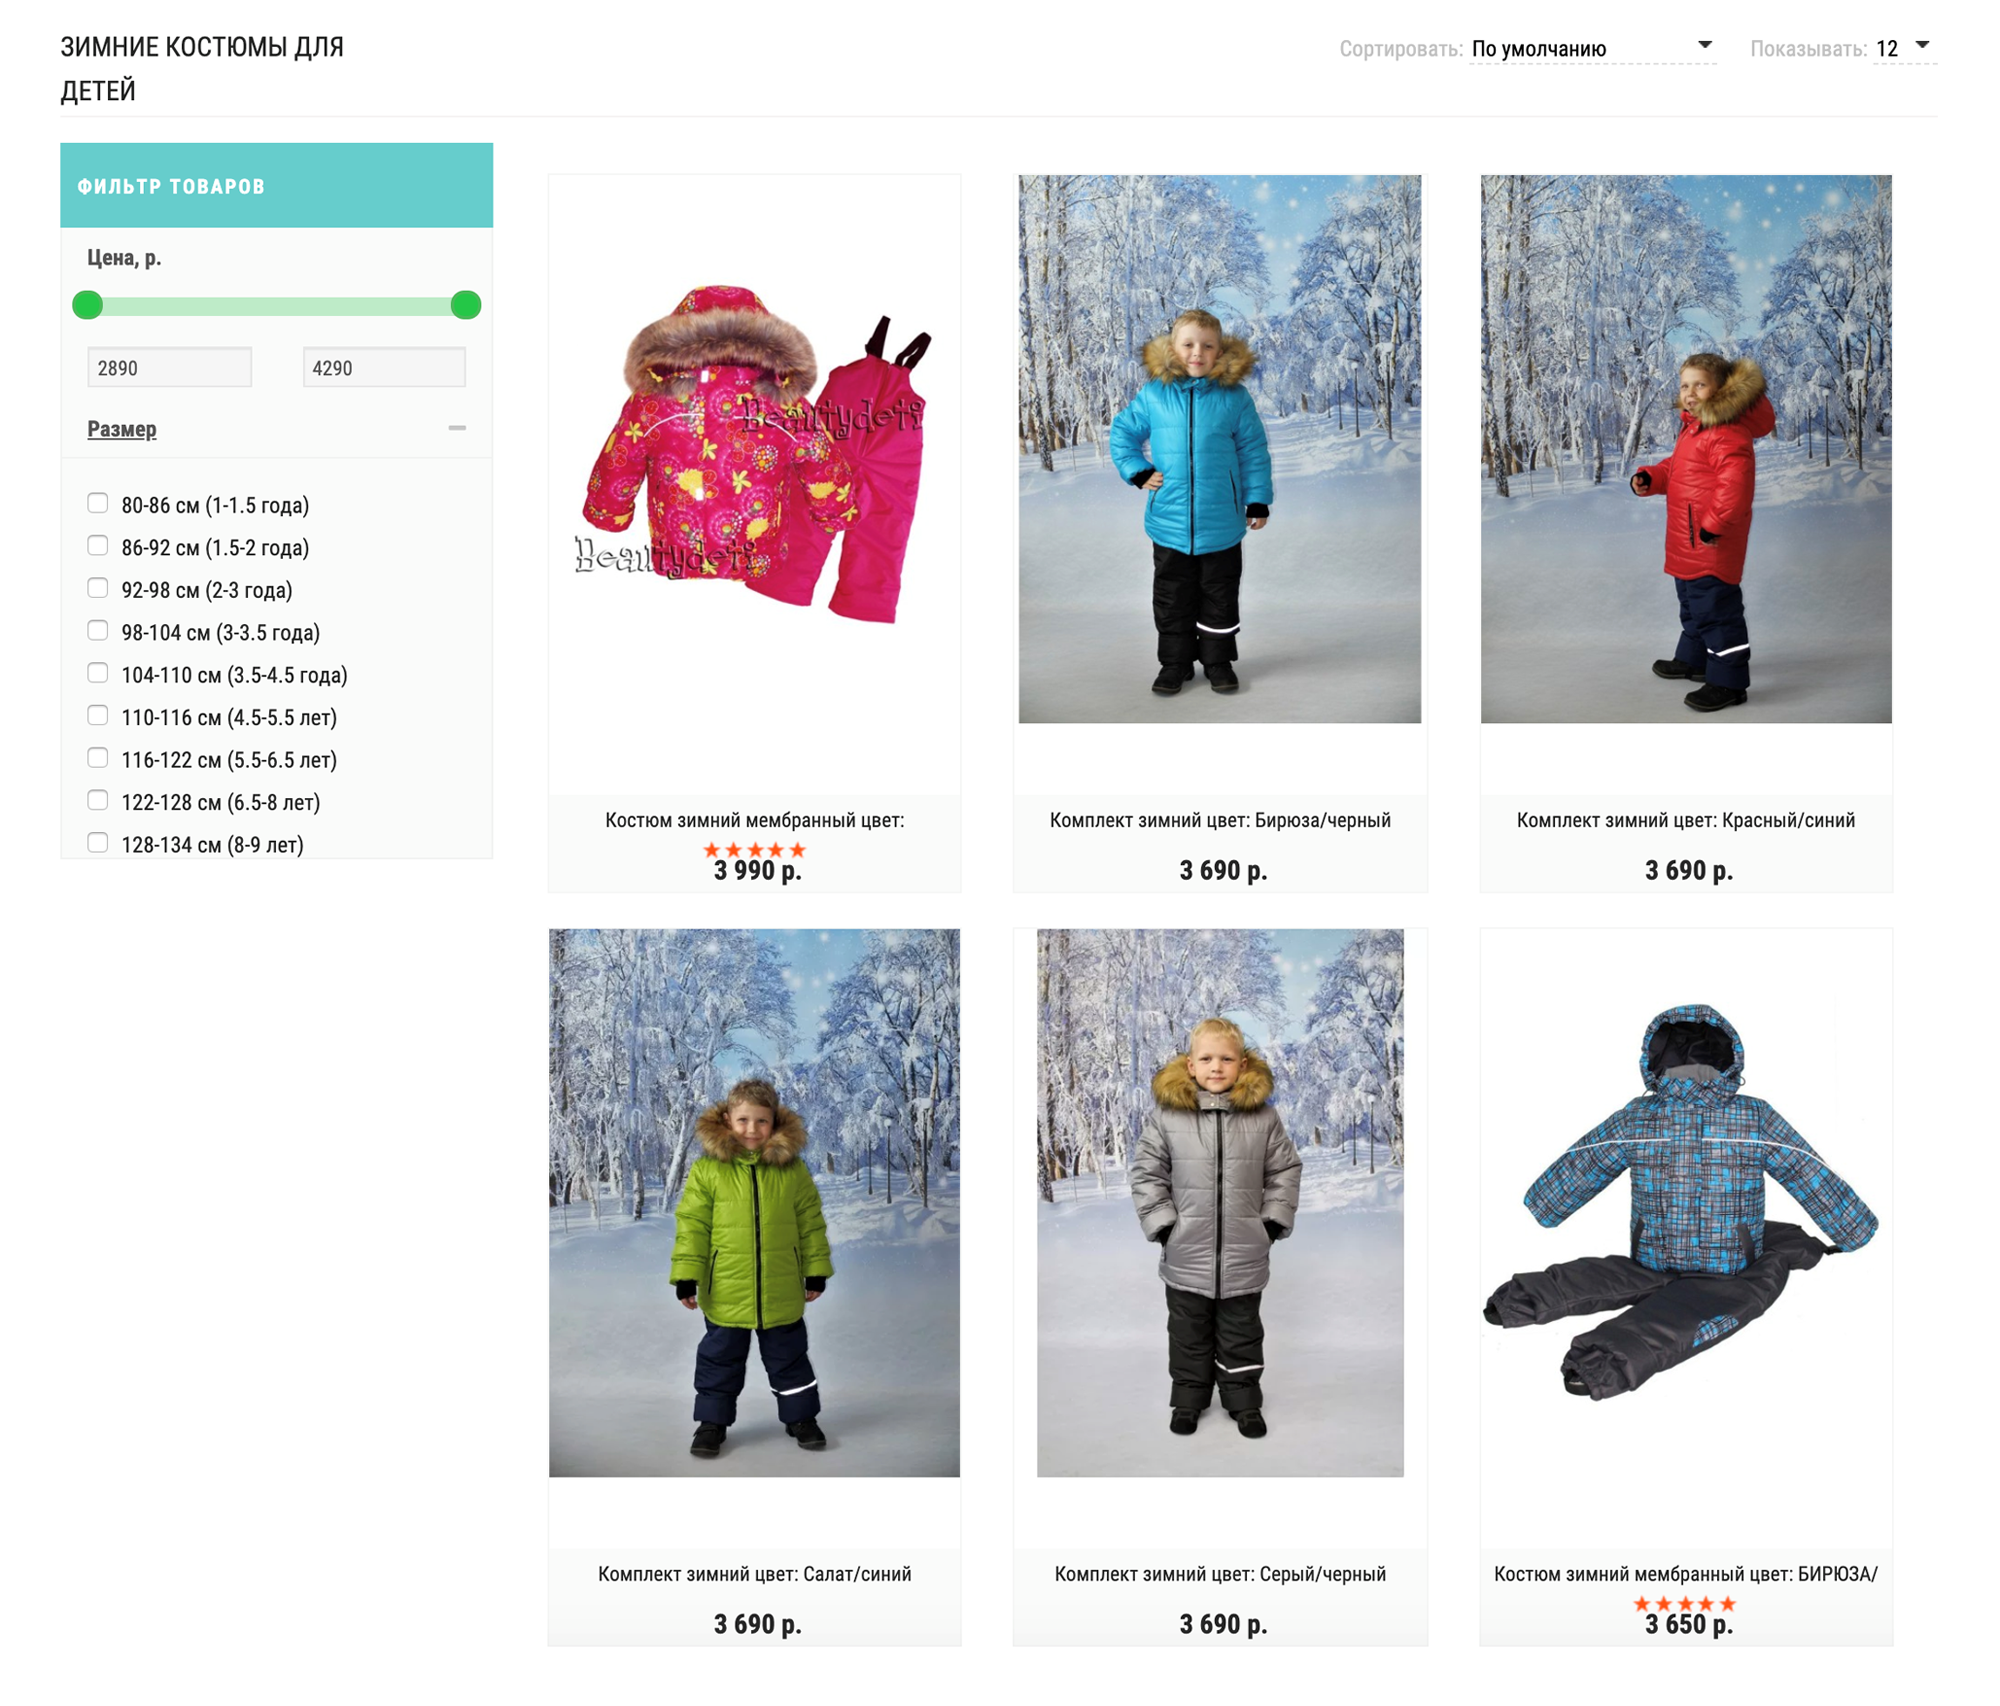 Детские зимние костюмы в интернет-магазине. В них не очень удобно кататься на лыжах, но они дешевле профессиональной формы